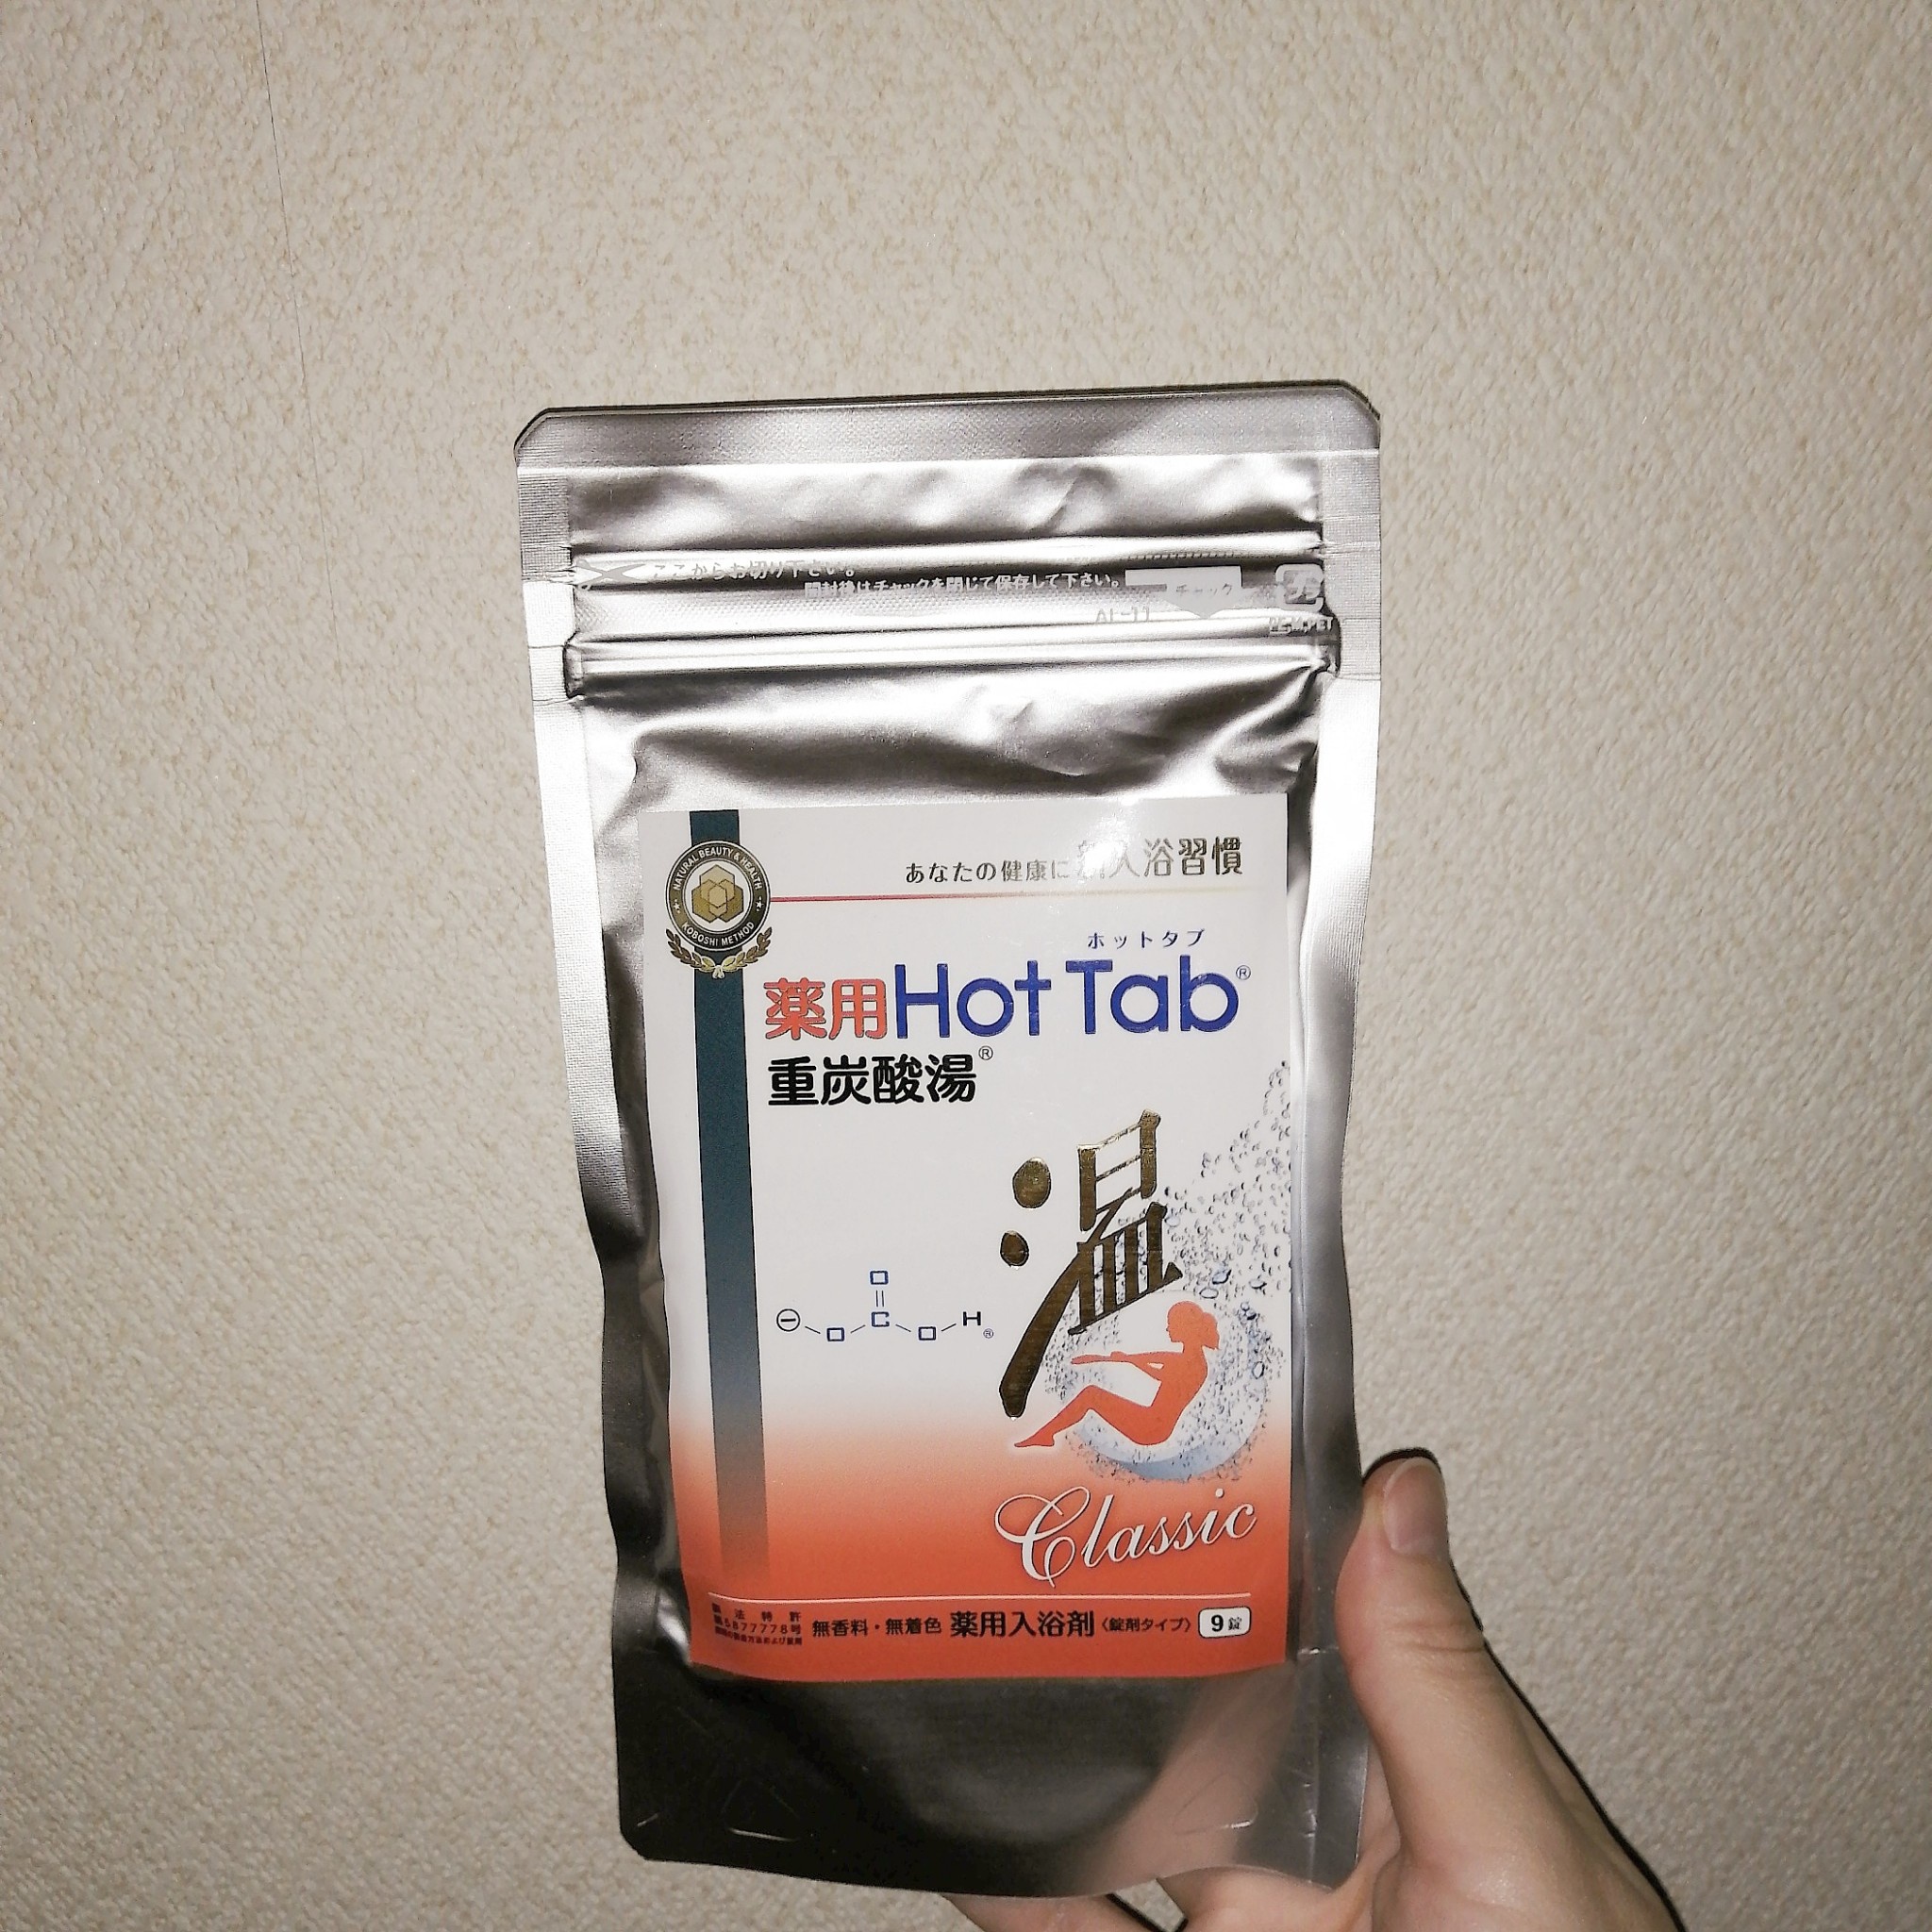 HOT TAB / 薬用ホットタブ重炭酸湯Classicの公式商品情報｜美容